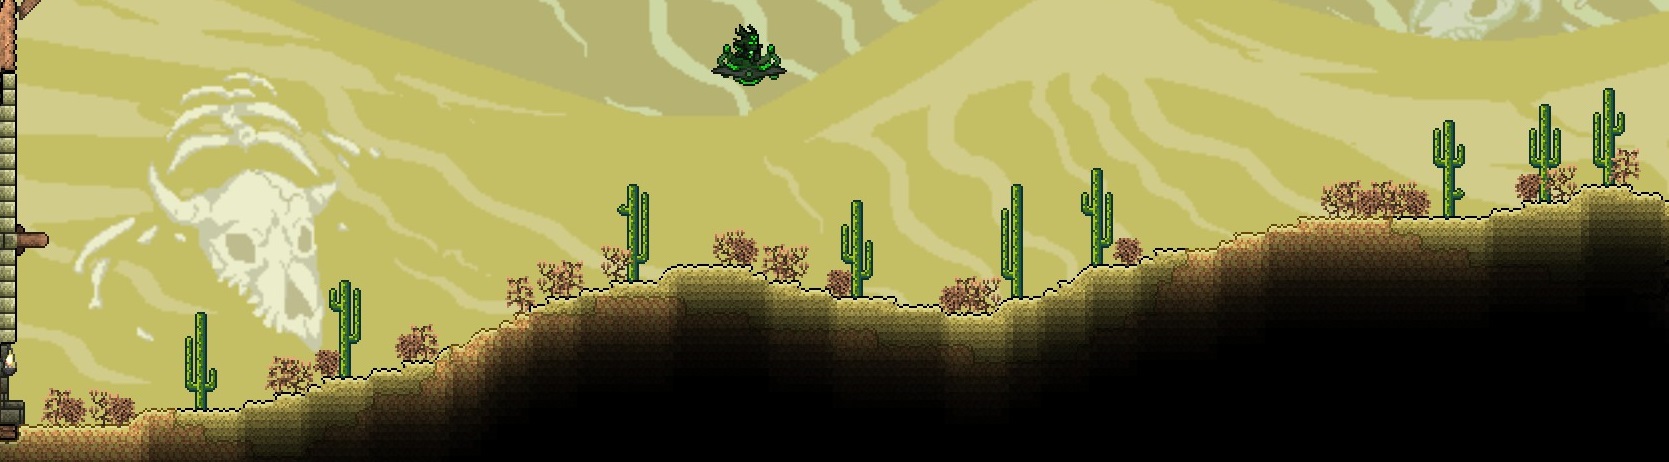 Desert Outpost 1.jpg